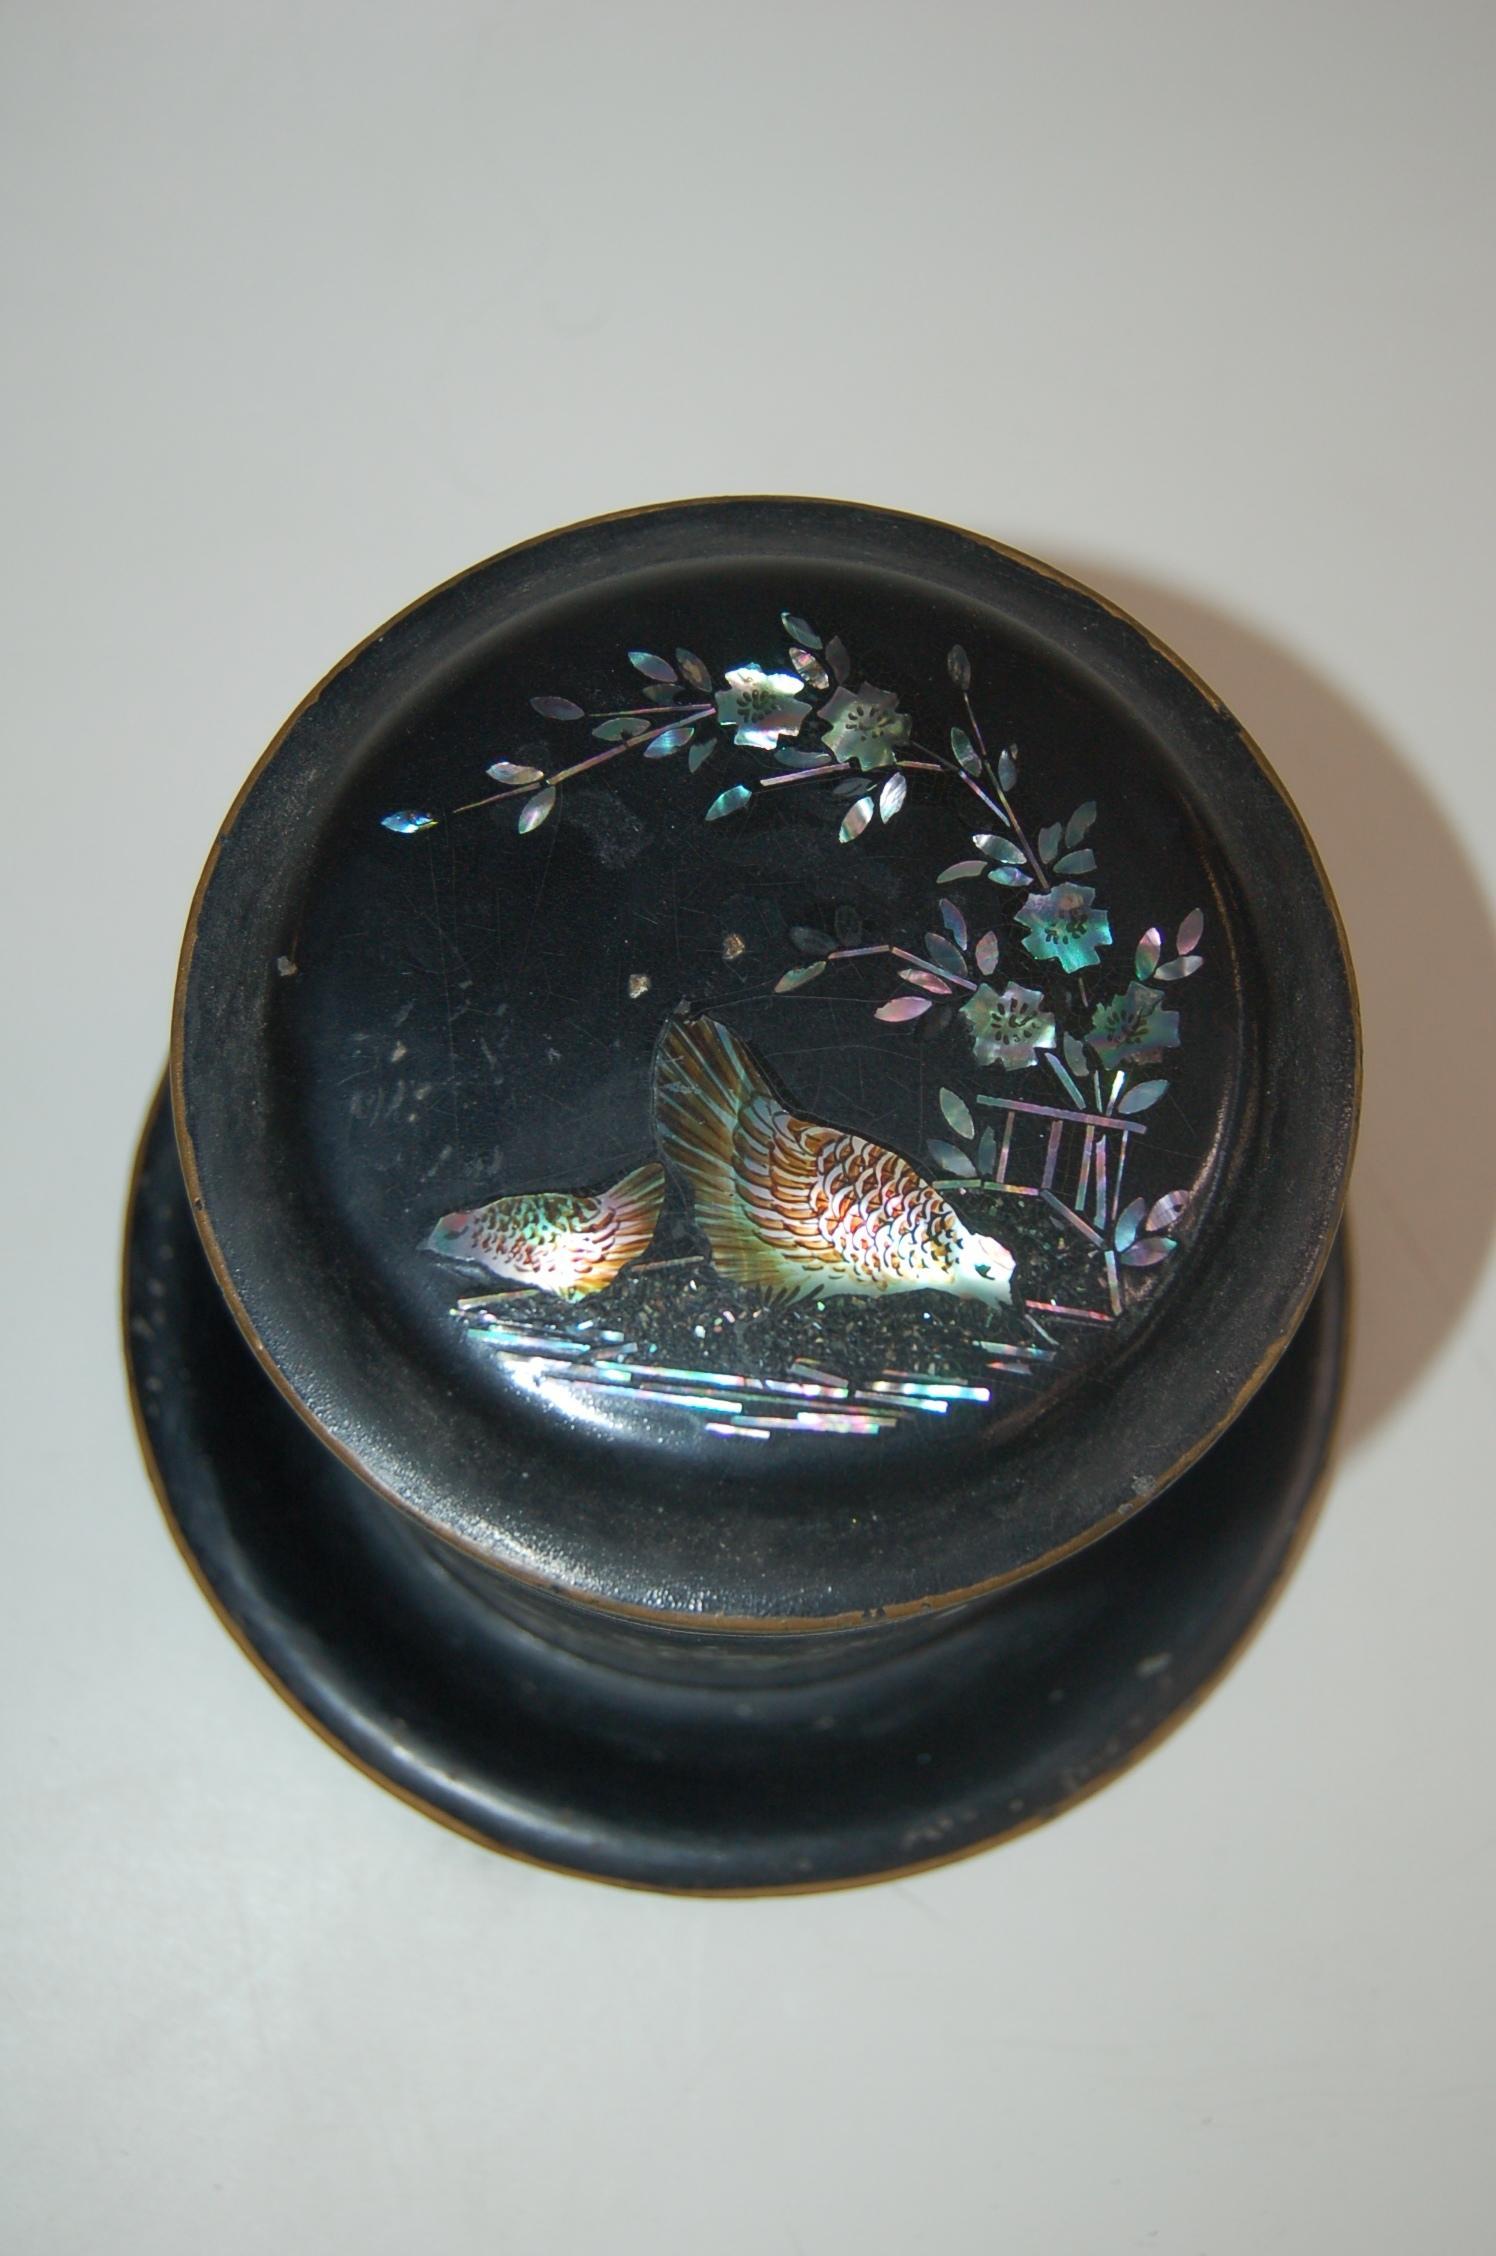 Vintage japanischen schwarzen Zinn mit Aboloni Akzente runden Tee Caddie / Kanister Scharnier oben und herausnehmbaren inneren Stück in Huhn und Blumenmotiv. 

Maße 6